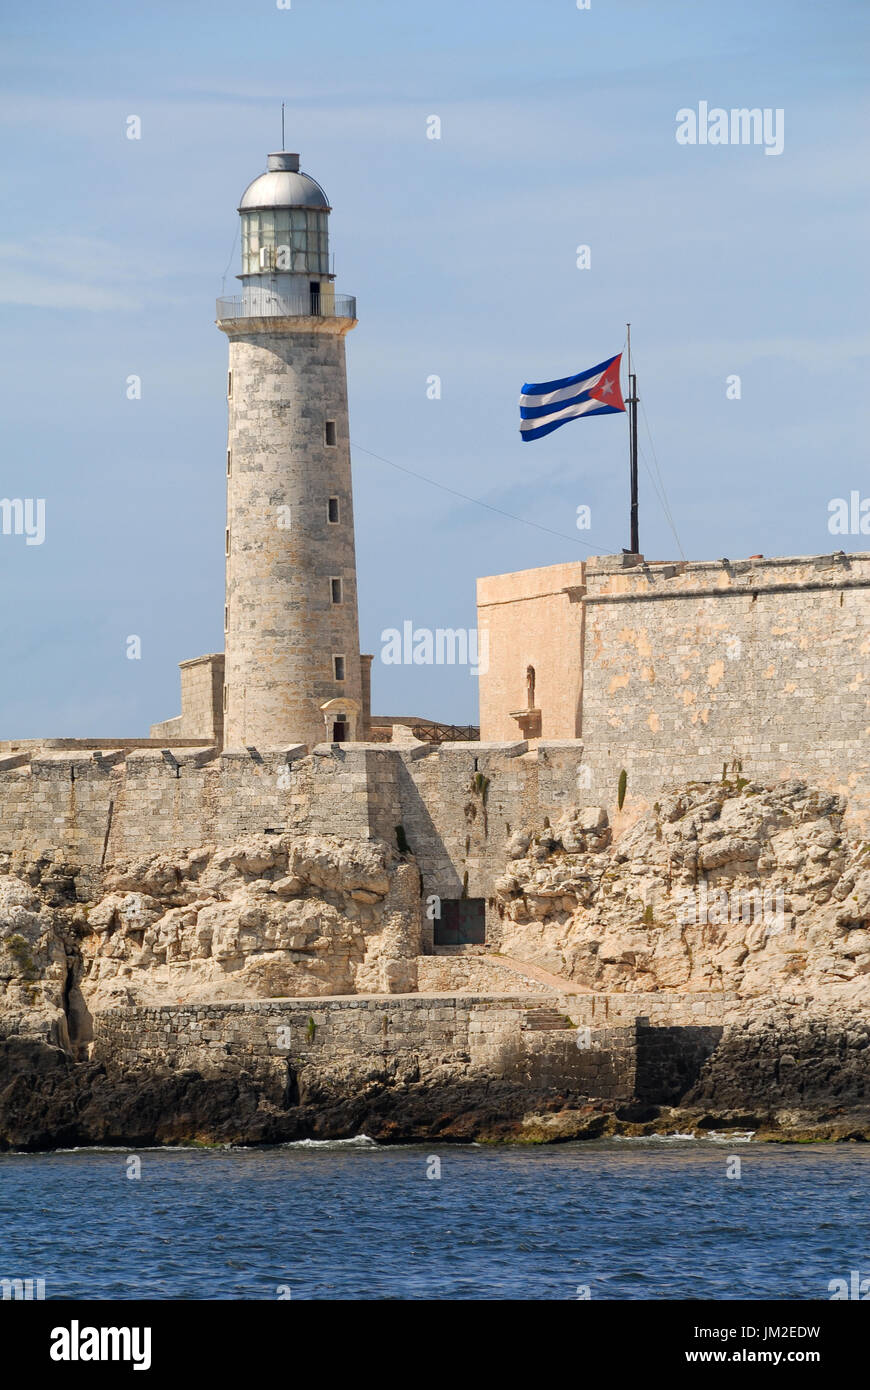 Der alte Leuchtturm und die Festung El Morro genannt im Hafen von Havanna in Kuba. Schuss in der Tageszeit mit der kubanischen Flagge fliegt stolz daneben. Stockfoto